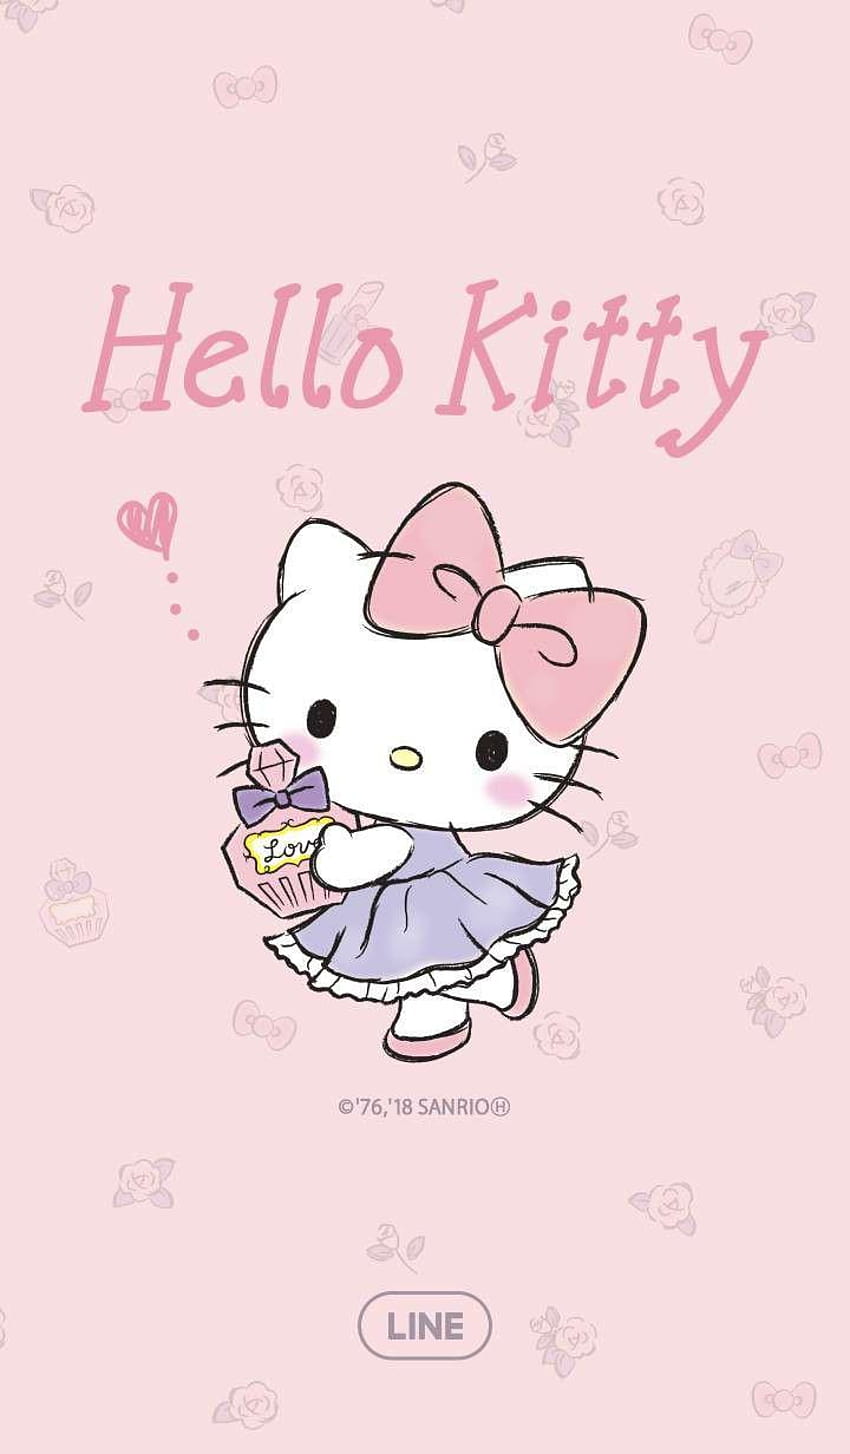 Nếu bạn yêu thích phong cách Kawaii, hãy xem ngay bức ảnh Hello Kitty Kawaii wallpaper đáng yêu này! Với màu hồng nhạt và những họa tiết ngộ nghĩnh, chú mèo xinh xắn này sẽ khiến bạn thấy như đang sống trong một thế giới đầy màu sắc. Hãy làm mới màn hình điện thoại và máy tính của bạn ngay hôm nay với bức ảnh này nhé!